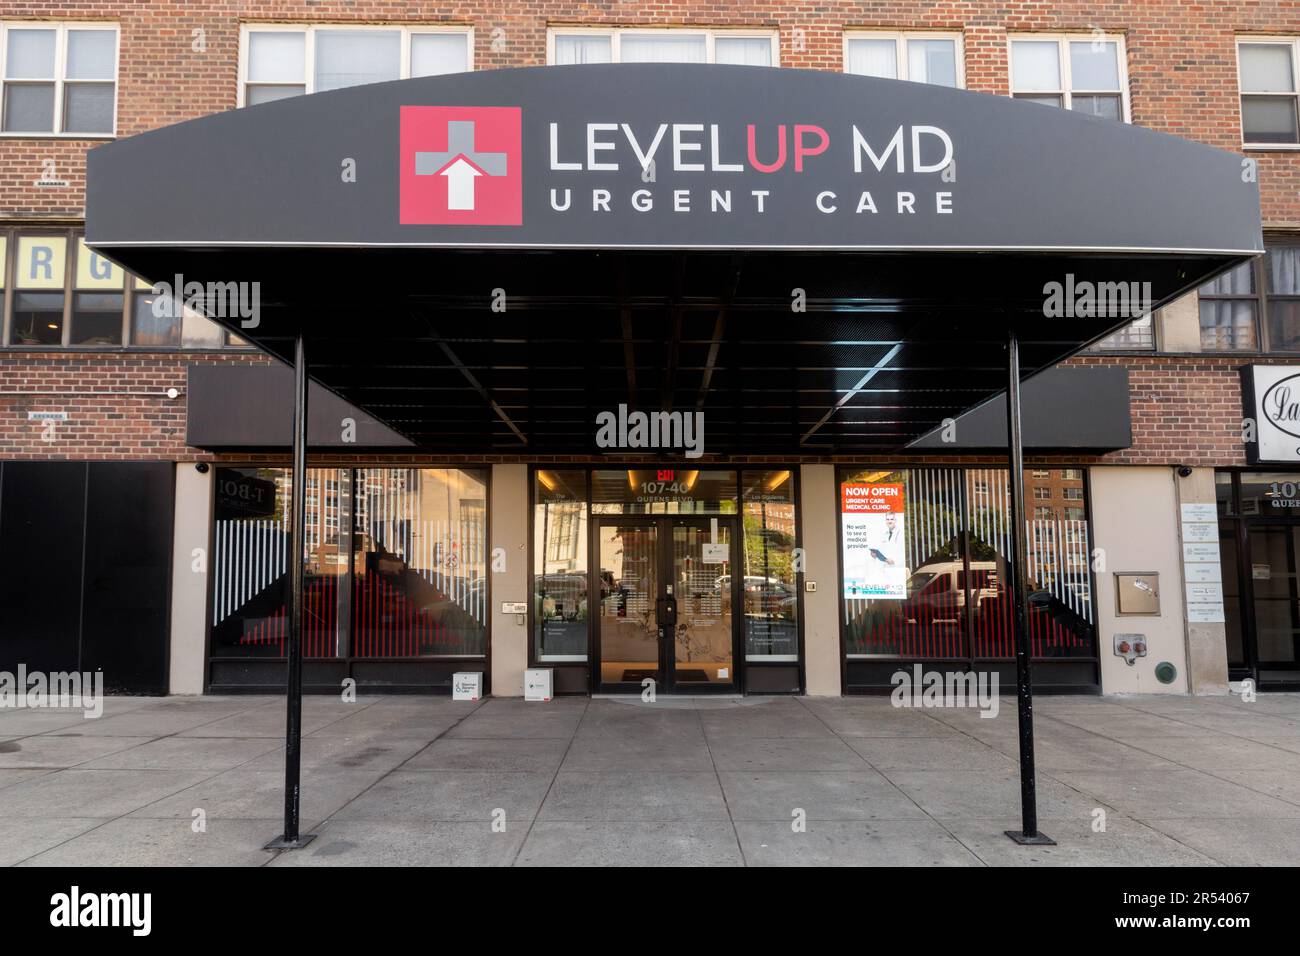 Level Up MD clinique de soins de santé d'urgence située sur Queens Blvd, à Queens, New York, une chaîne de cliniques sans rendez-vous, aucun rendez-vous nécessaire établissement de soins de santé Banque D'Images